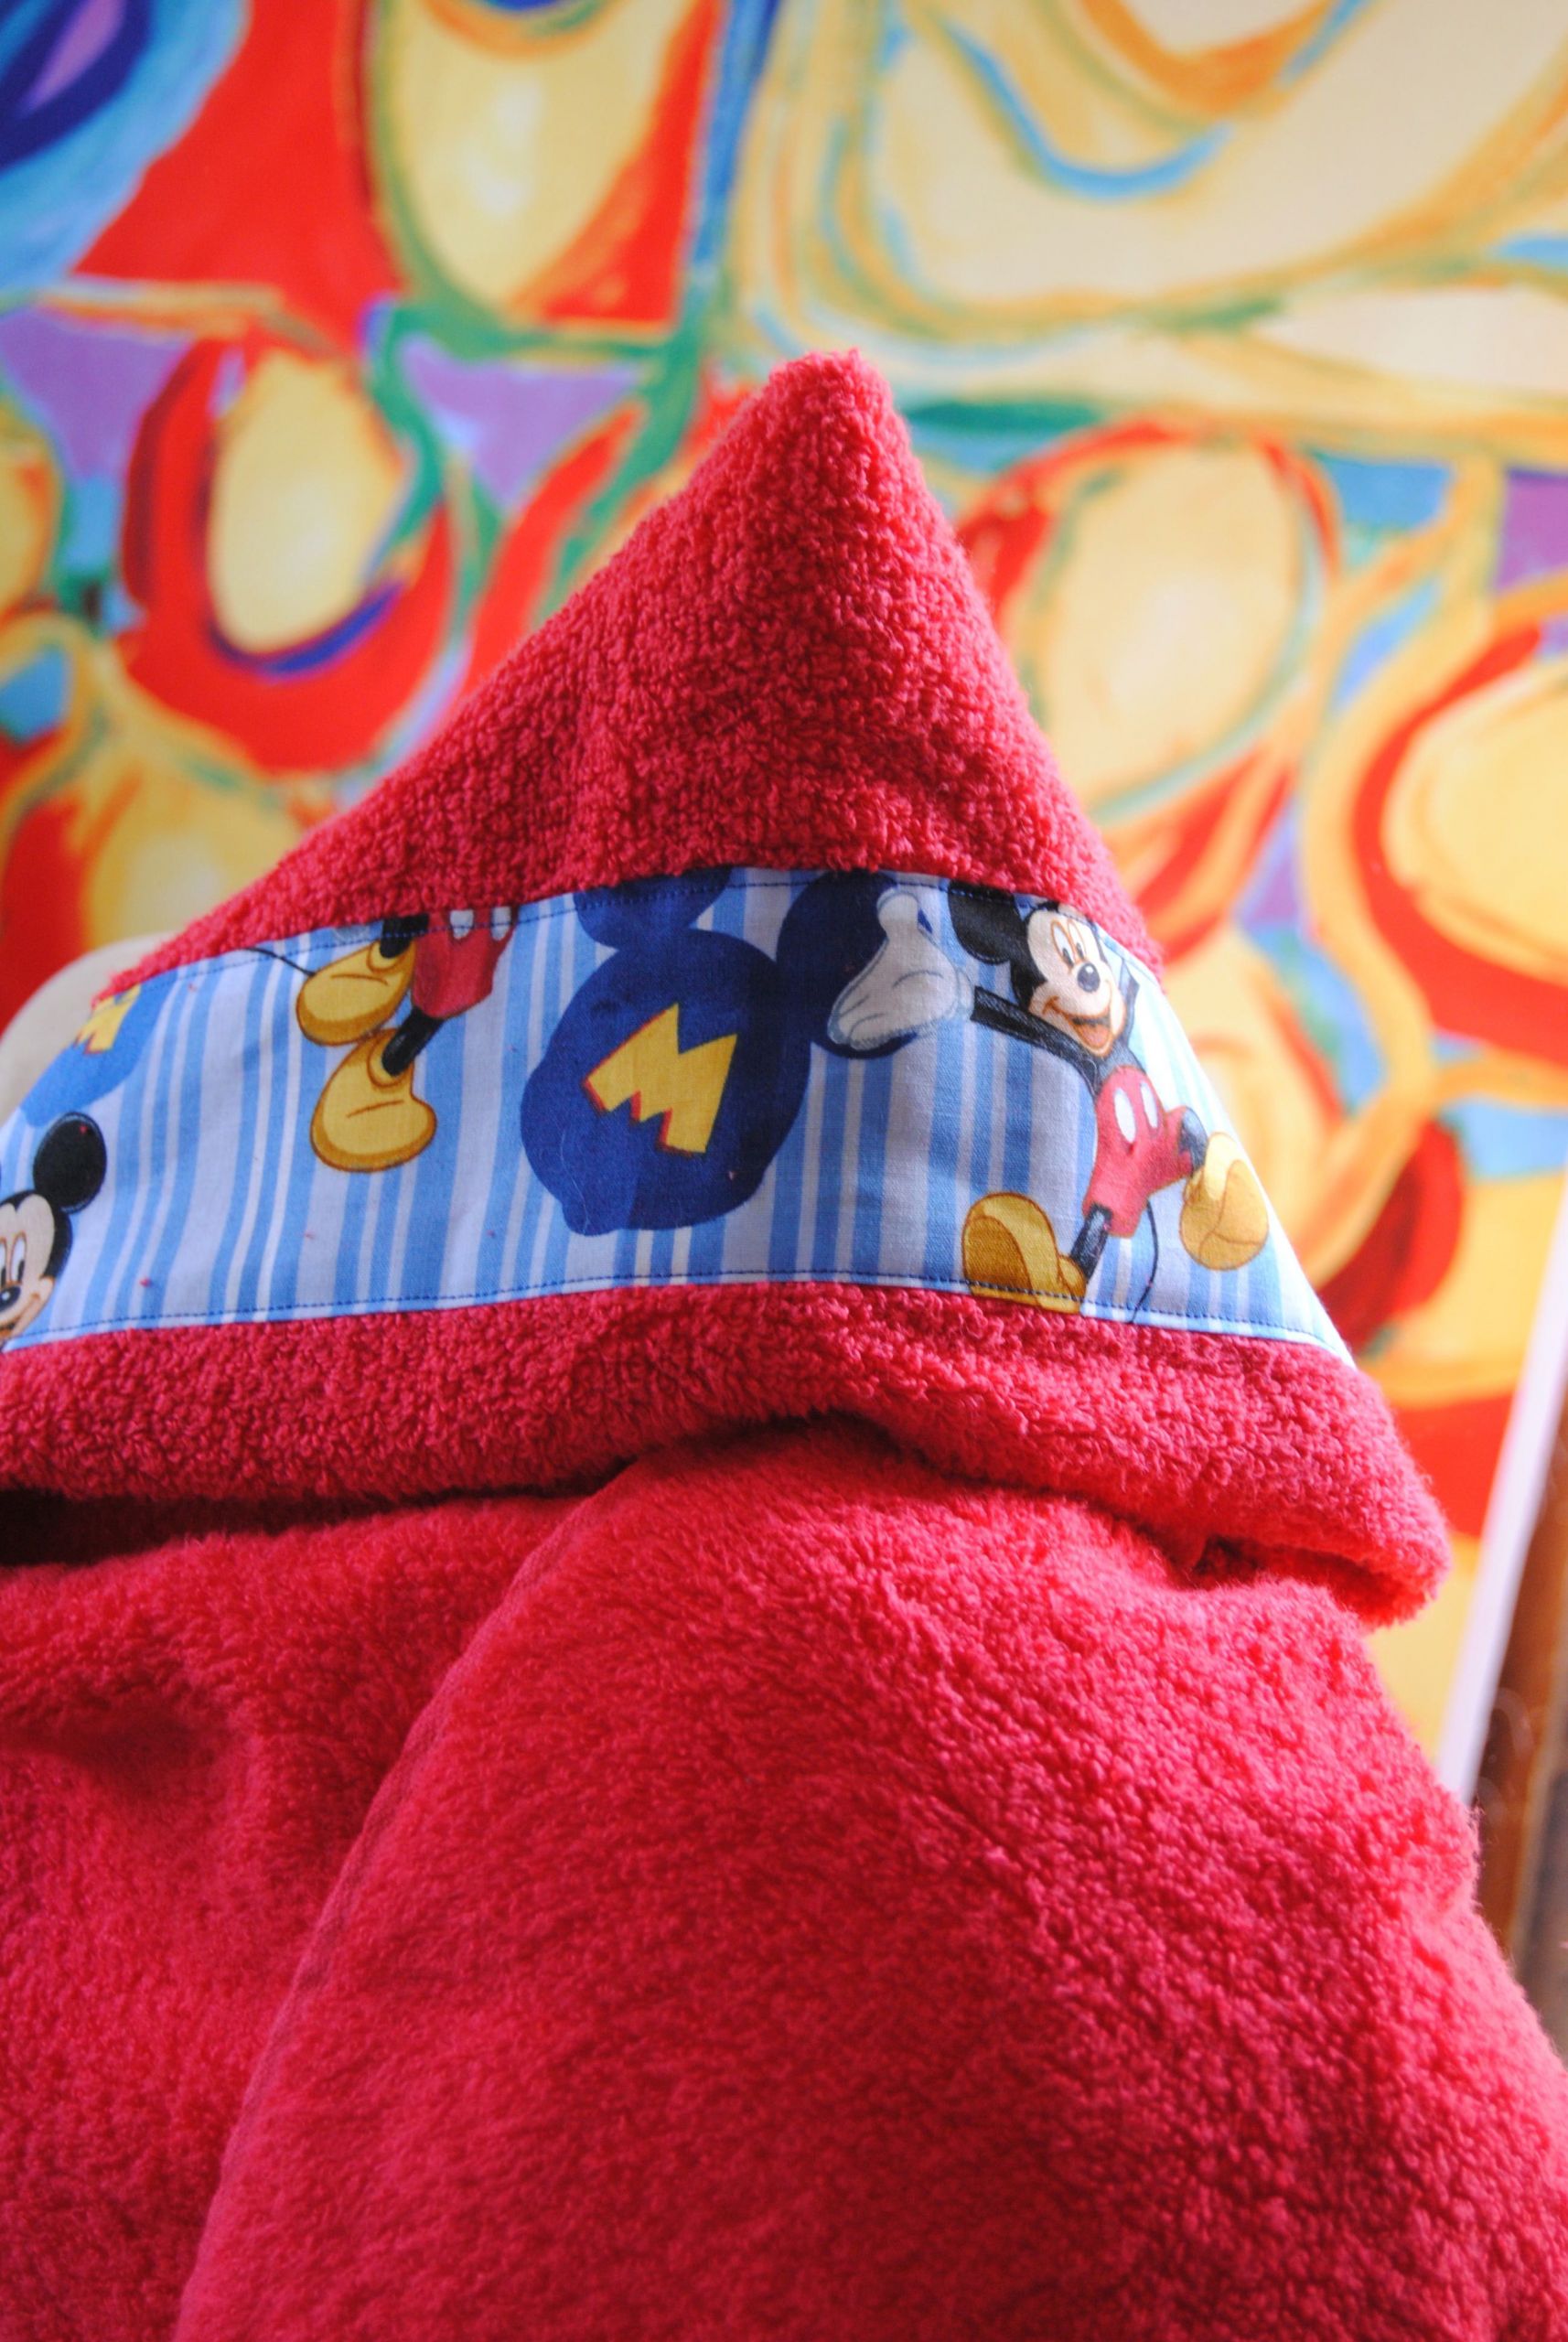 DIY Hooded Baby Towel
 homemade hooded baby towels